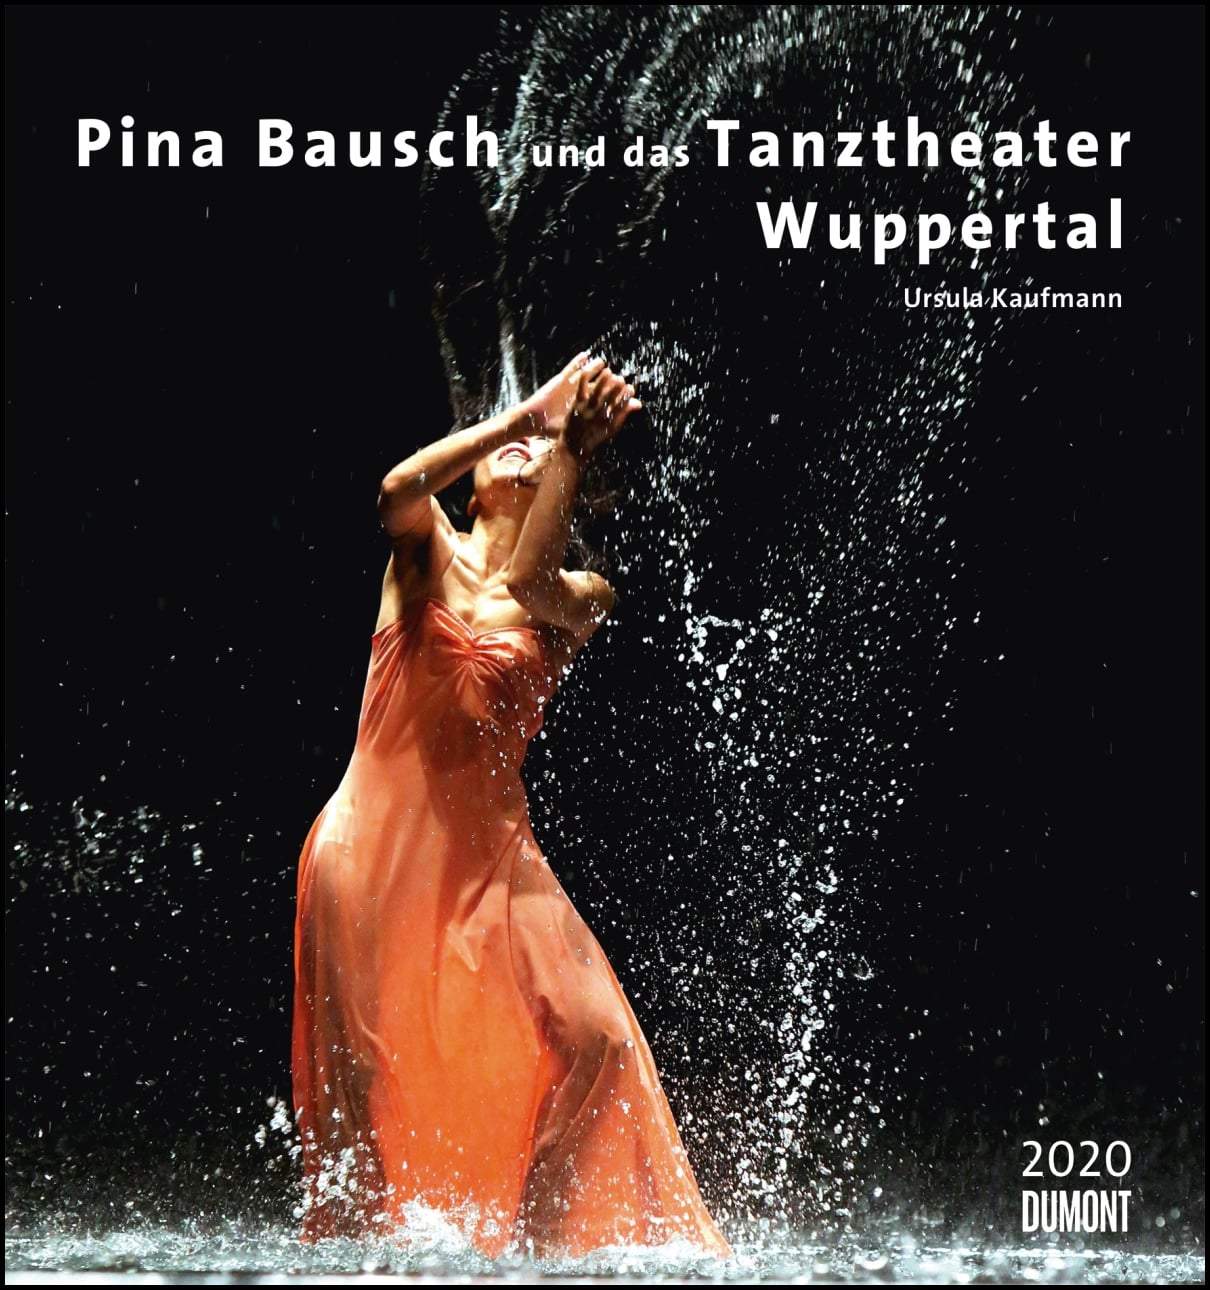 [Kalender] Pina Bausch und das Tanztheater Wuppertal mit Bildern von Ursula Kaufmann – Kalender 2020